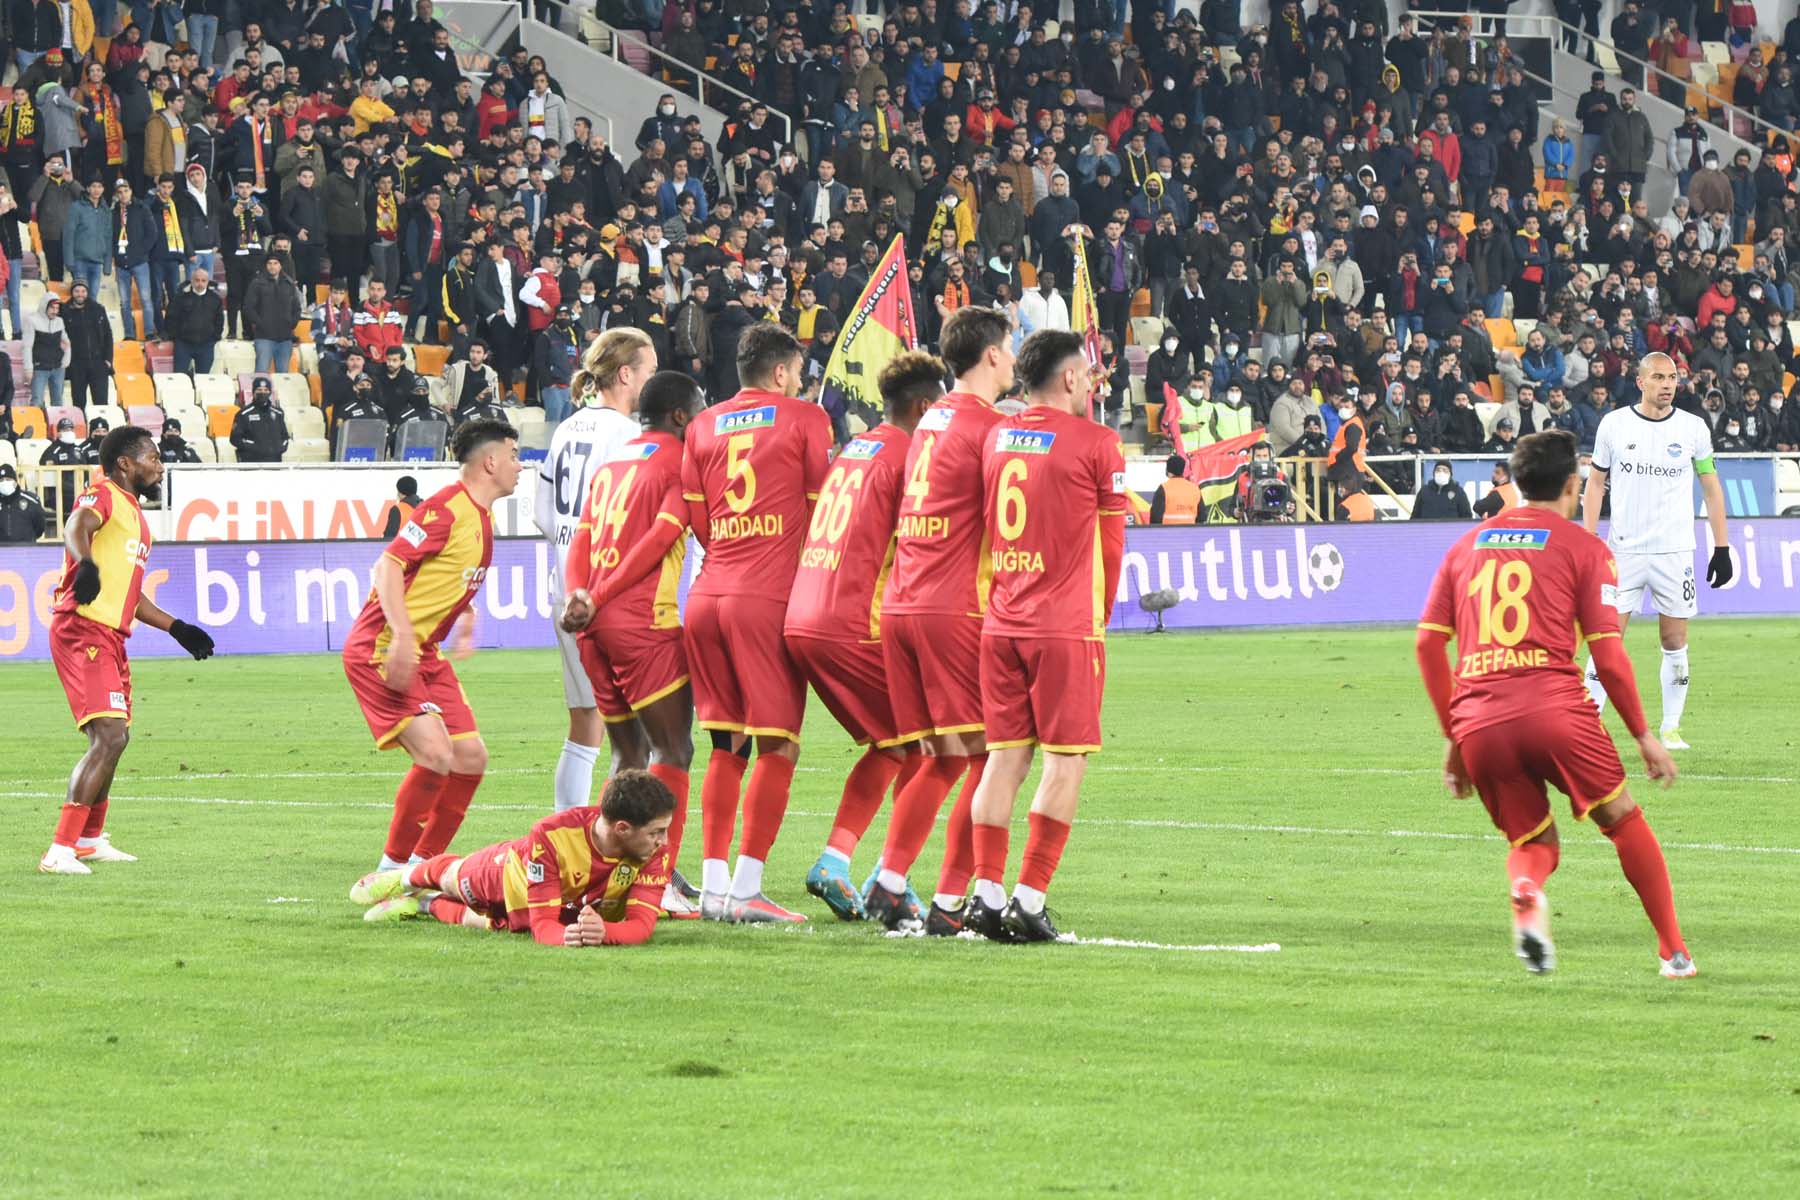 Yeni Malatyaspor 1– 0 Adana Demirspor |Maç sonucu, özeti 